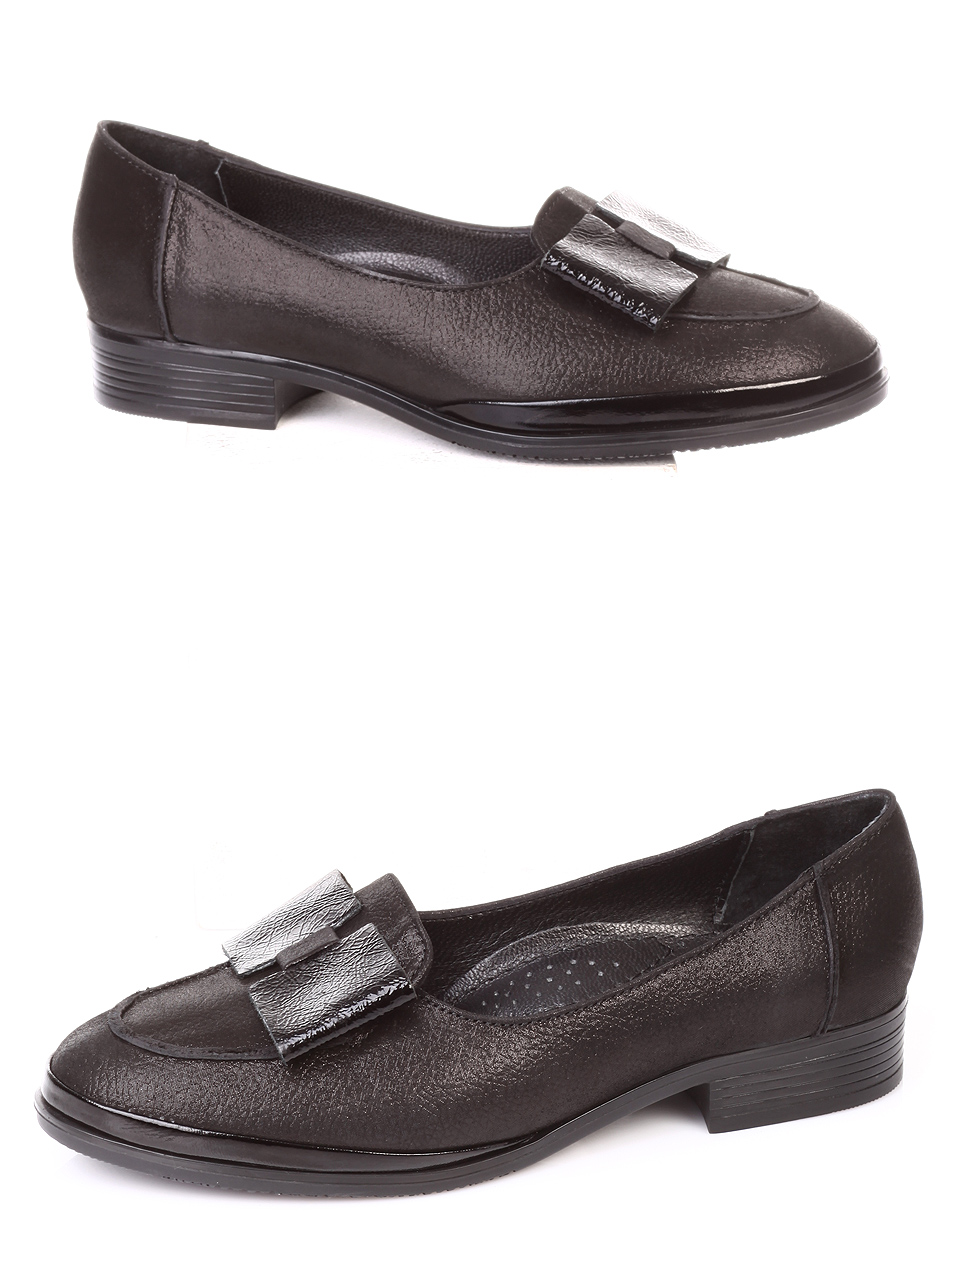 Ежедневни дамски обувки от естествена кожа 3AT-181077 pewter